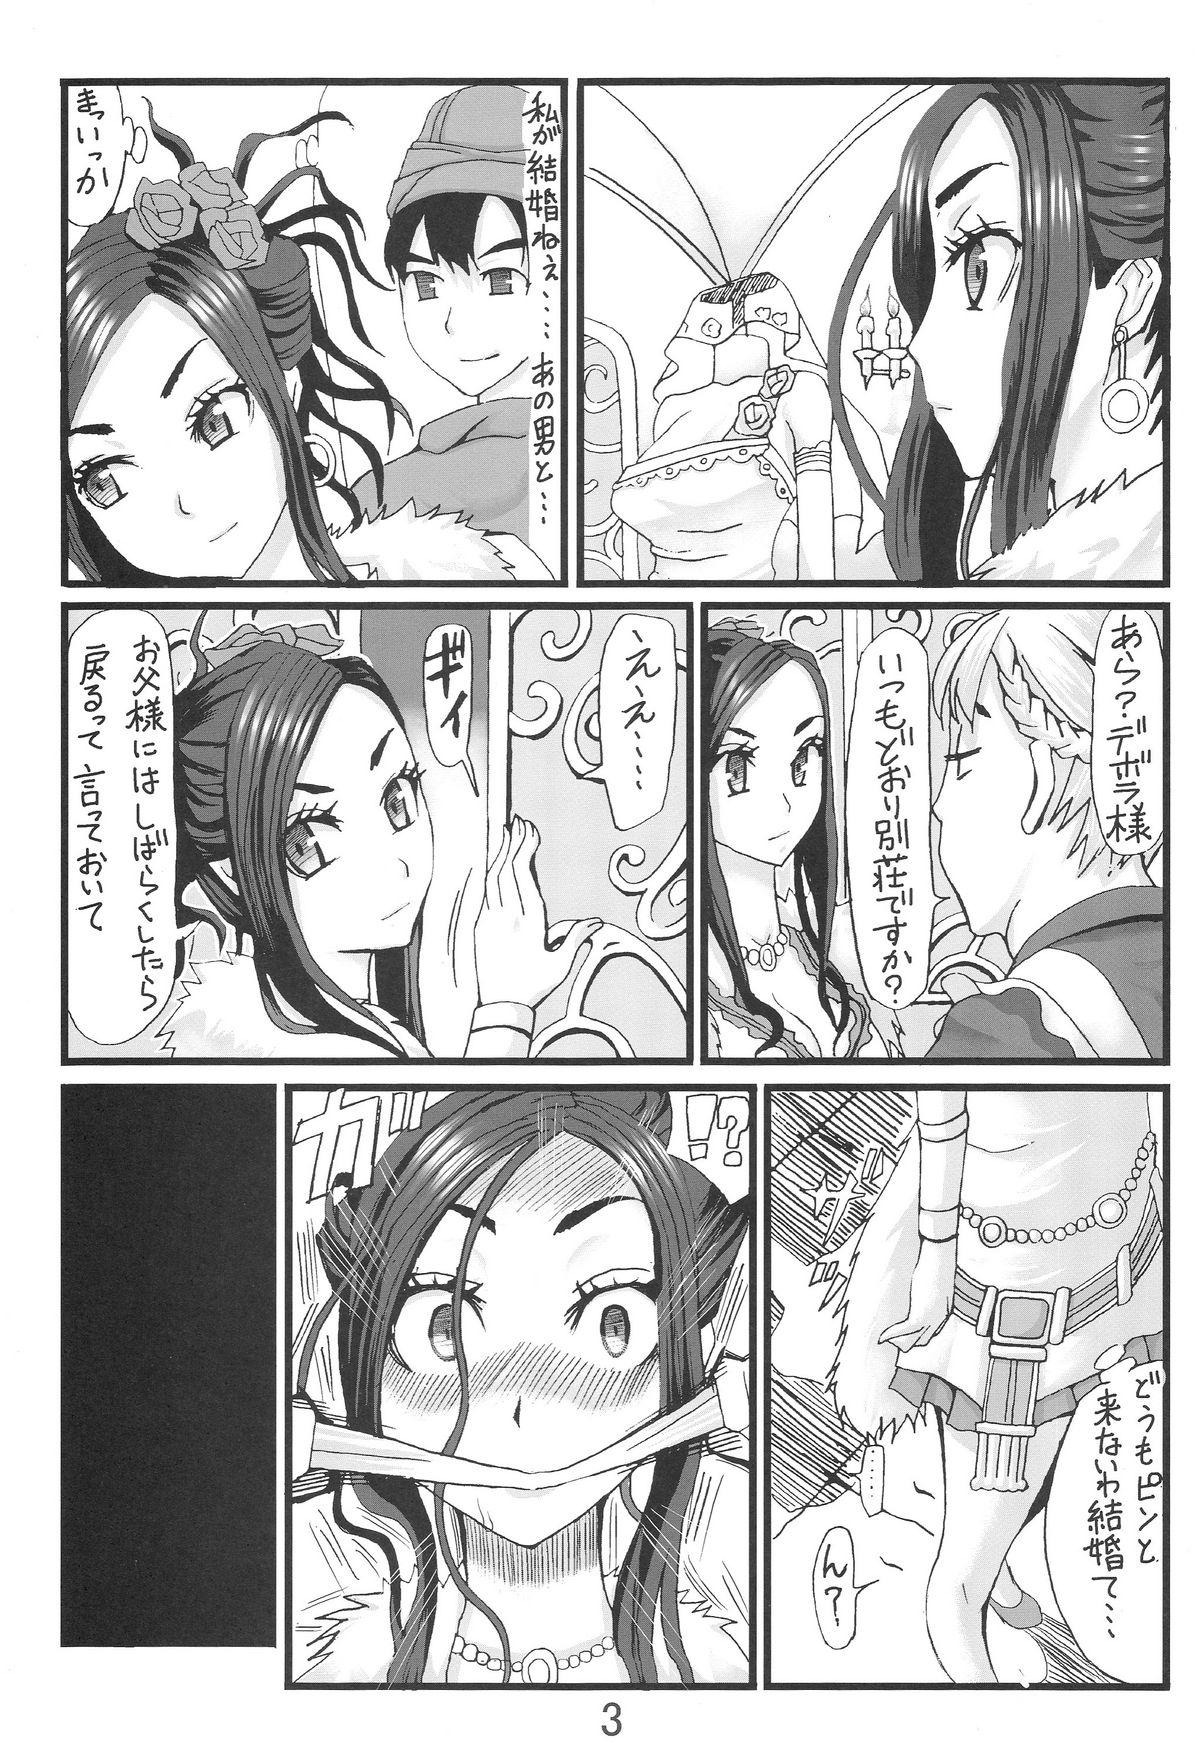 Homemade Debora S kara M e no Izanai - Dragon quest v Bizarre - Page 2